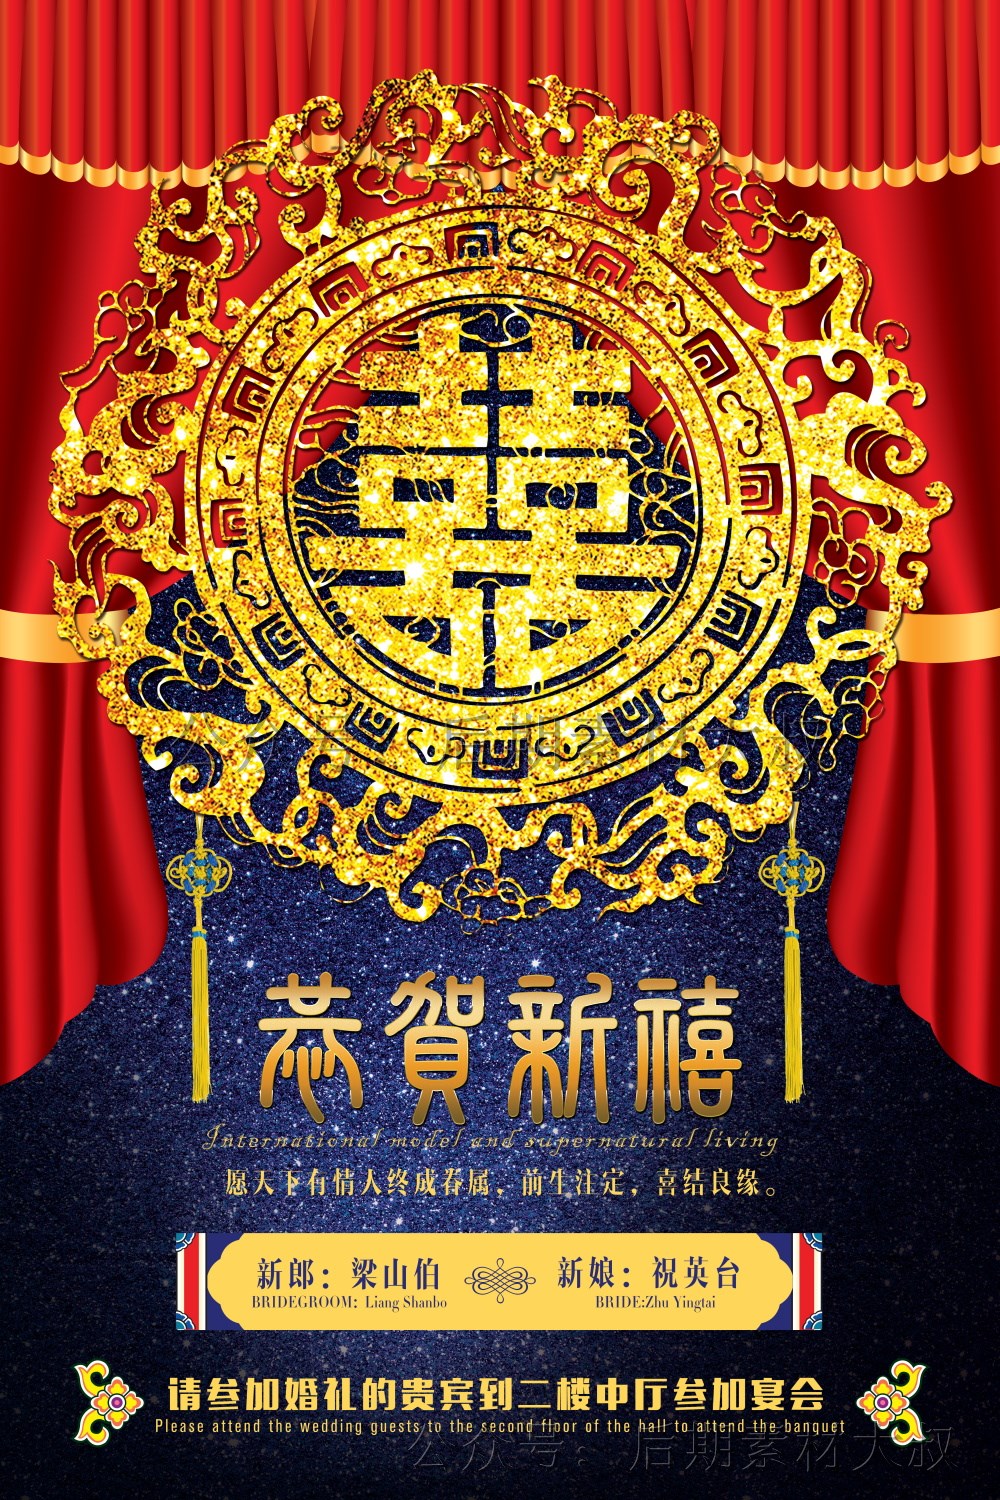 中式古装影楼婚纱婚礼婚庆红色喜庆签到迎宾海报psd模板设计素材